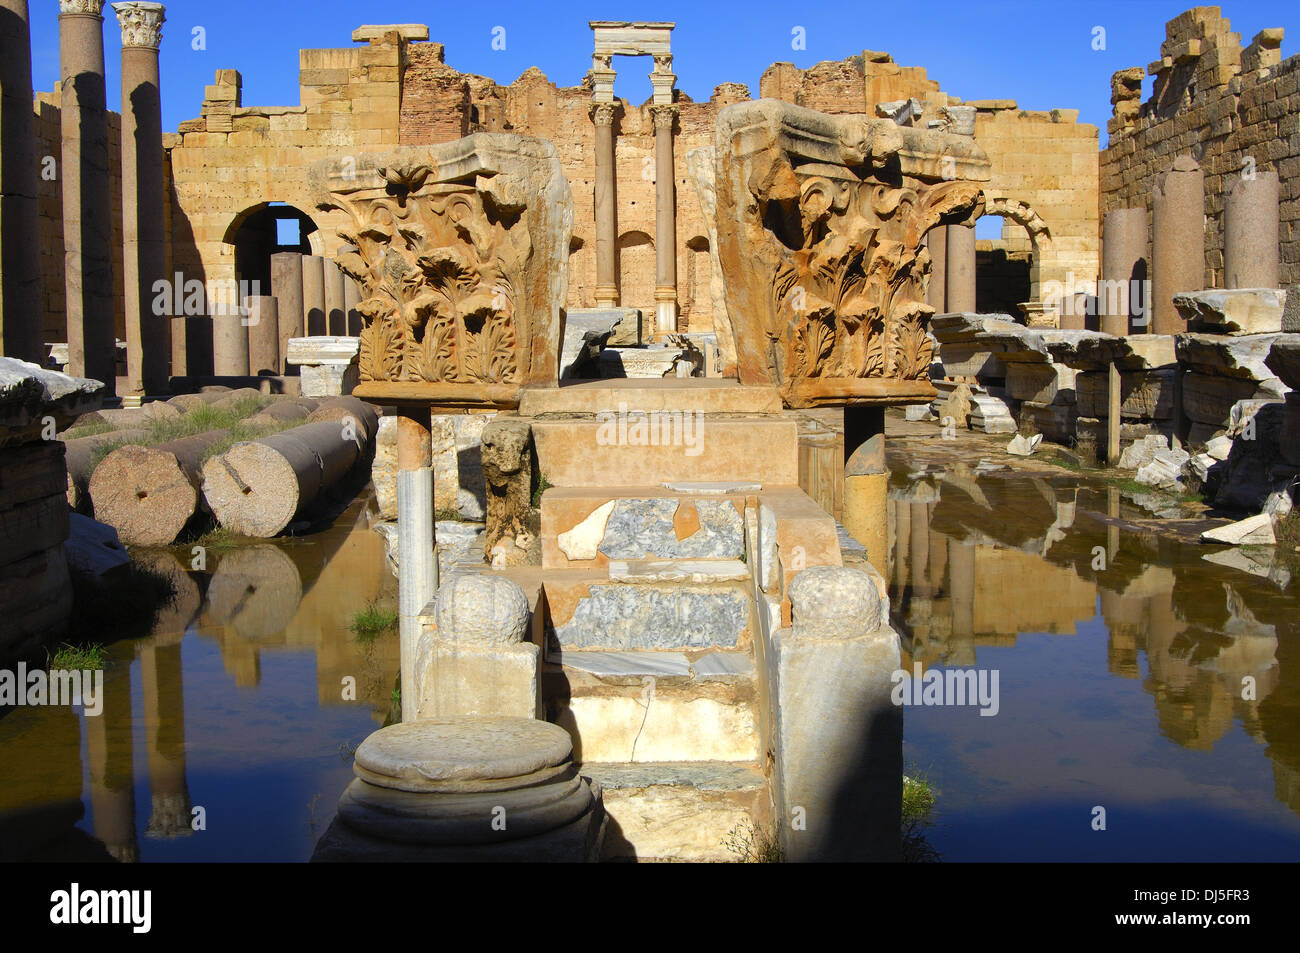 Ancient ruins, Libya Stock Photo